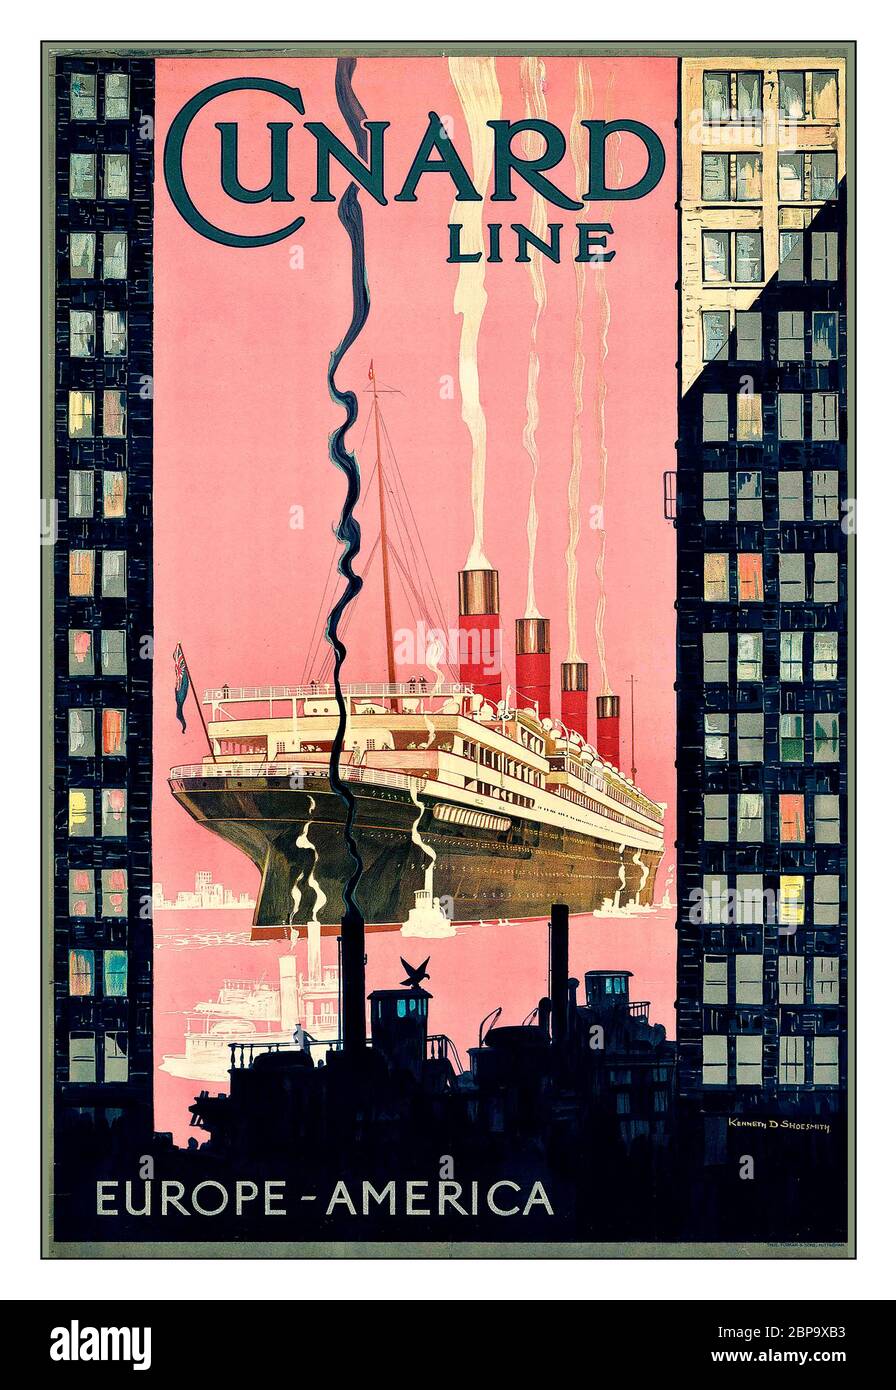 VINTAGE 1920, AFFICHE DE VOYAGE DE CROISIÈRE CUNARD LINE, LITHOGRAPHIE EUROPE-AMÉRIQUE en couleurs, vers 1925, par Kenneth Denton Shoesmith (1890-1939) imprimé par Forman & Sons, Nottingham, Banque D'Images